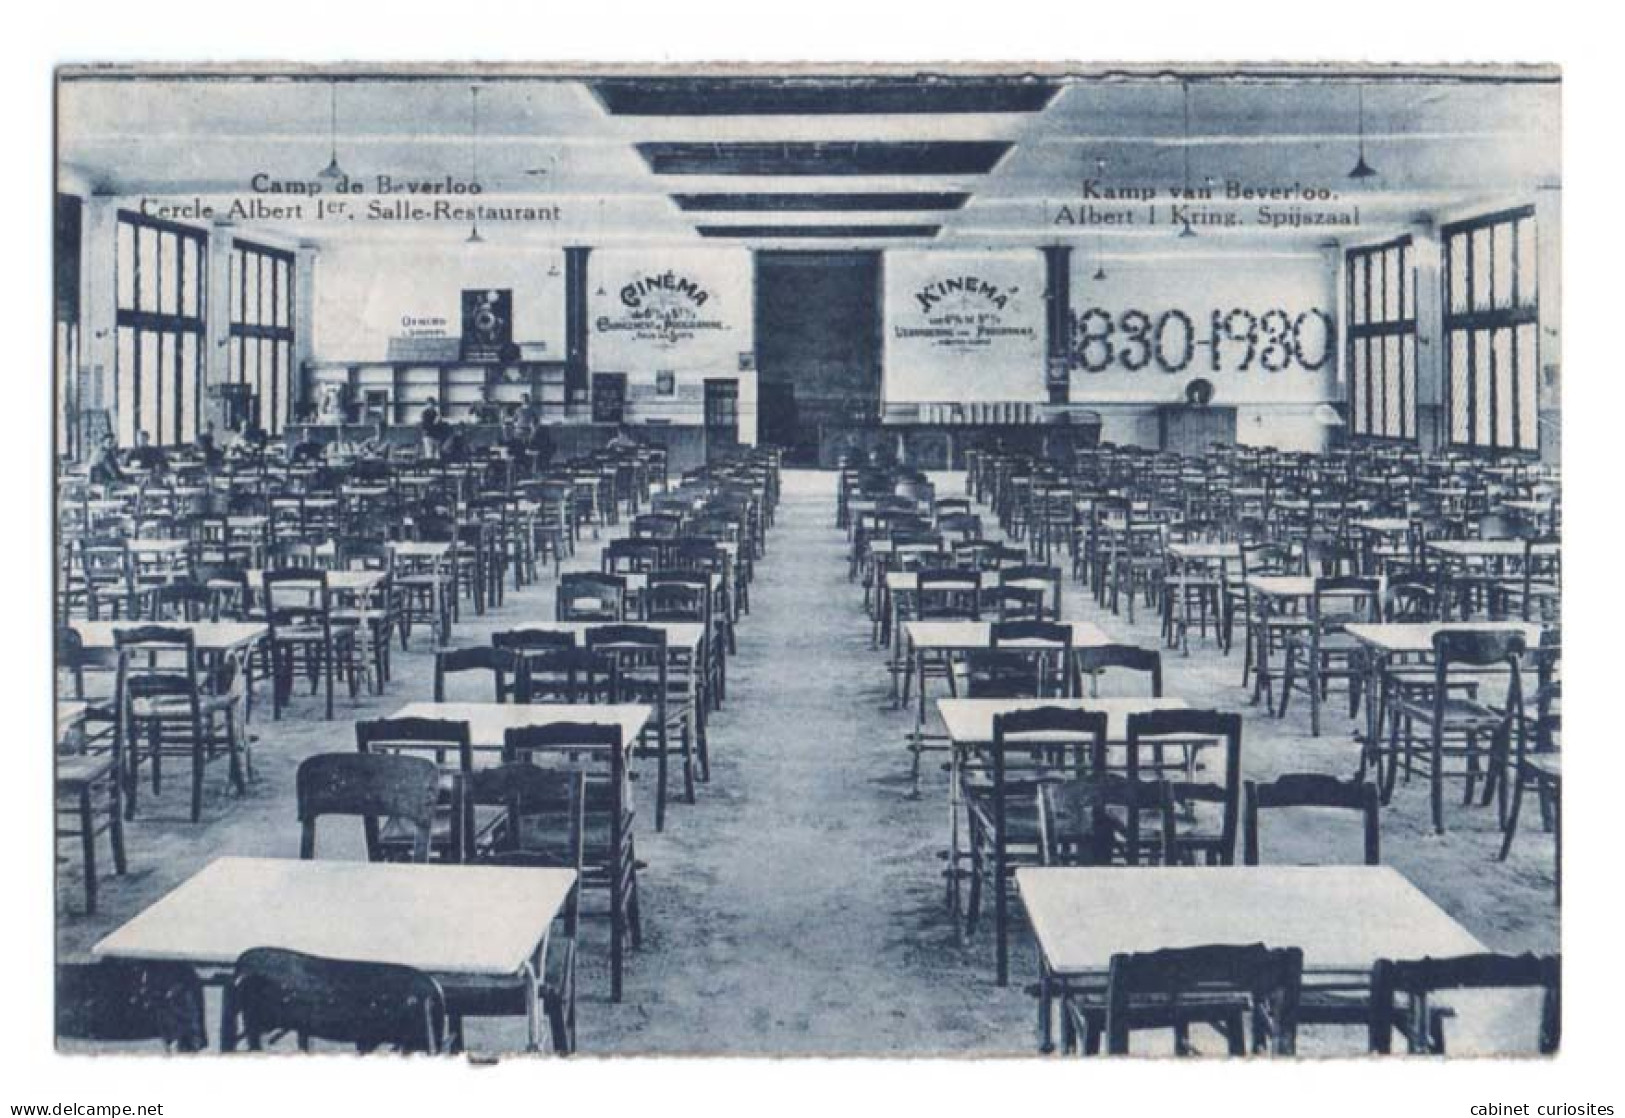 CAMP DE BEVERLOO - Cercle Albert 1er - Salle Restaurant - Kamp Van Beverloo - Albert 1 Kring - Spijszaal - 1830-1930 - Leopoldsburg (Kamp Van Beverloo)